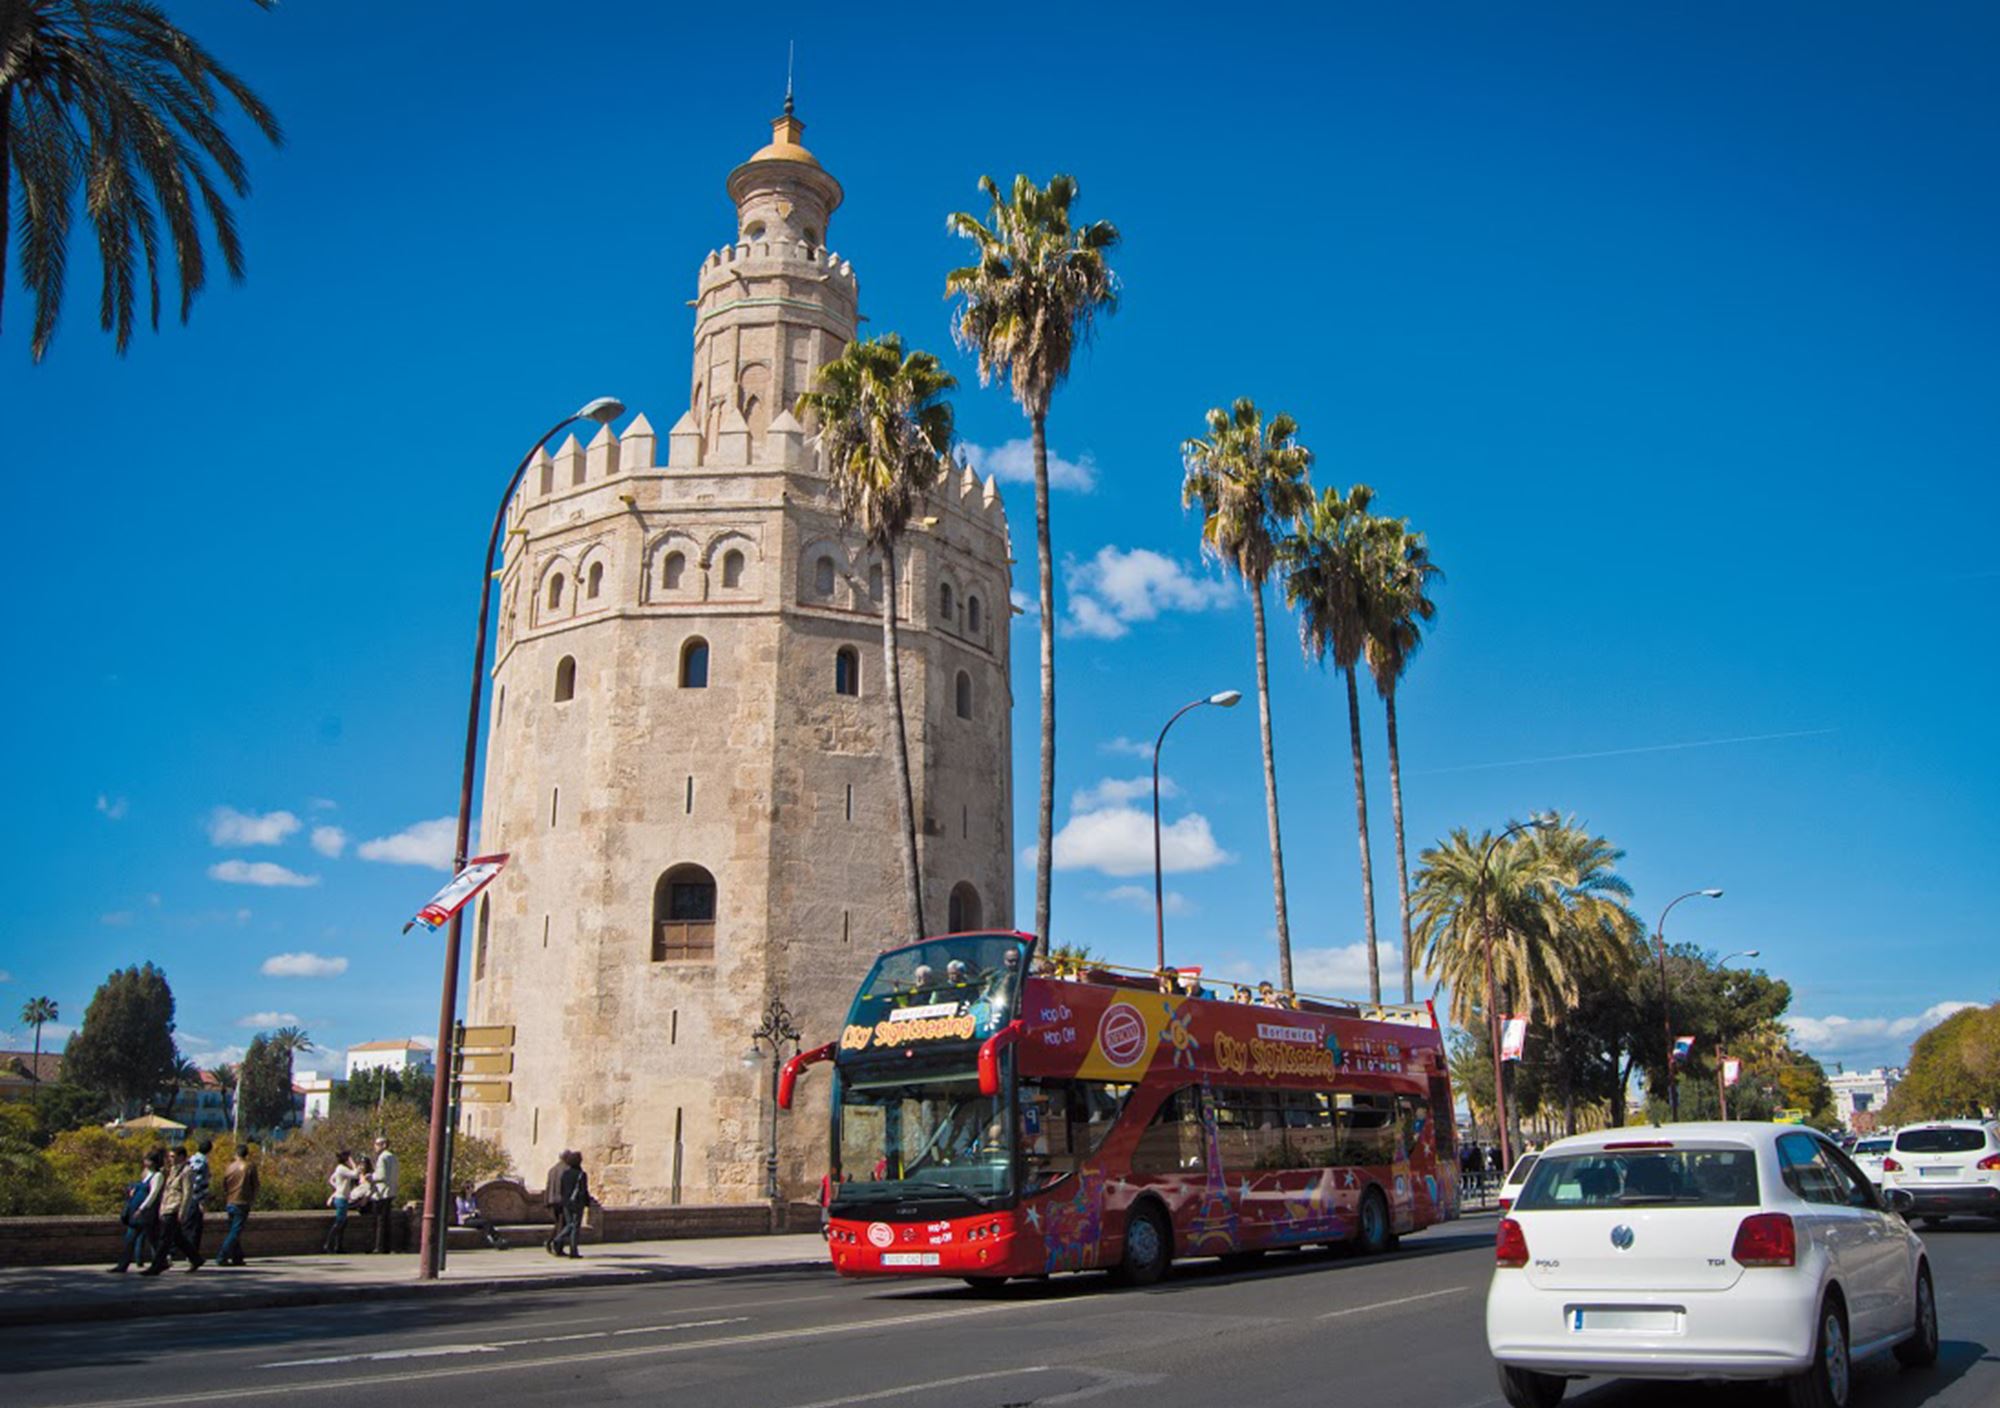 réserver guidées tours Bus Touristique City Sightseeing Séville acheter billets visiter